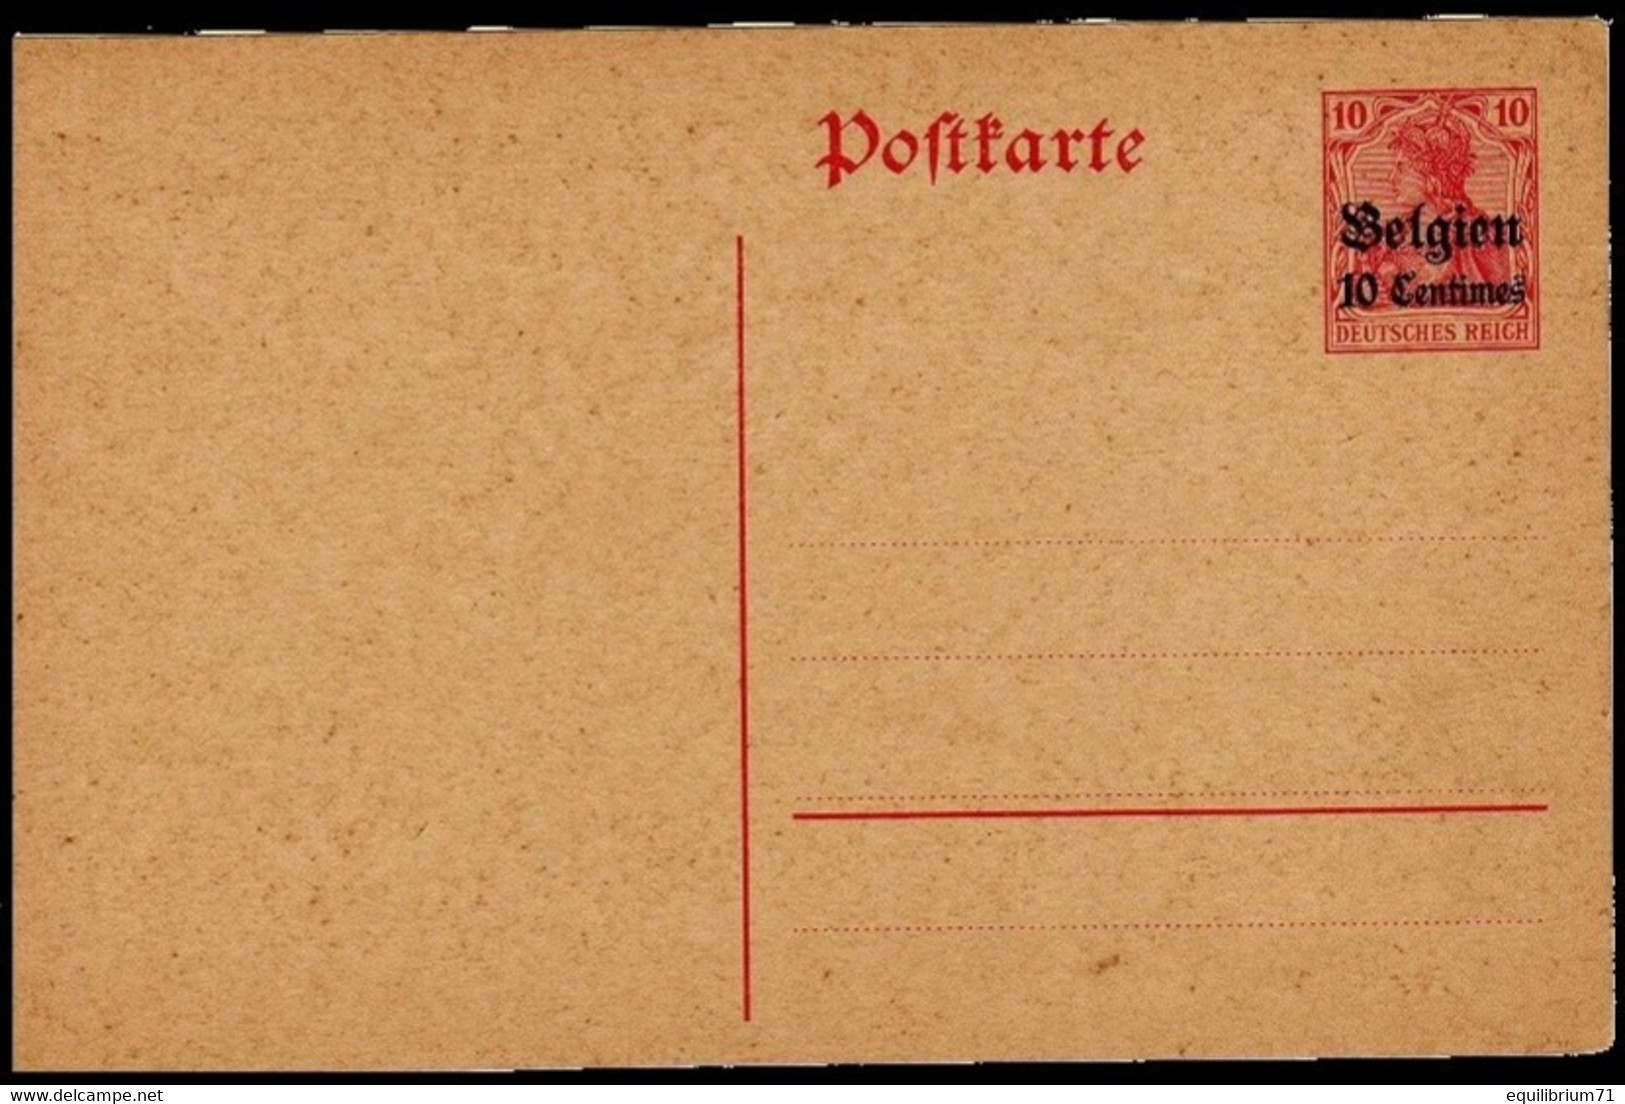 Occupation Allemande 1914-1918 - Carte Postale / Postkaart - 3 - NEUF/NIEUW - Deutsche Besatzung